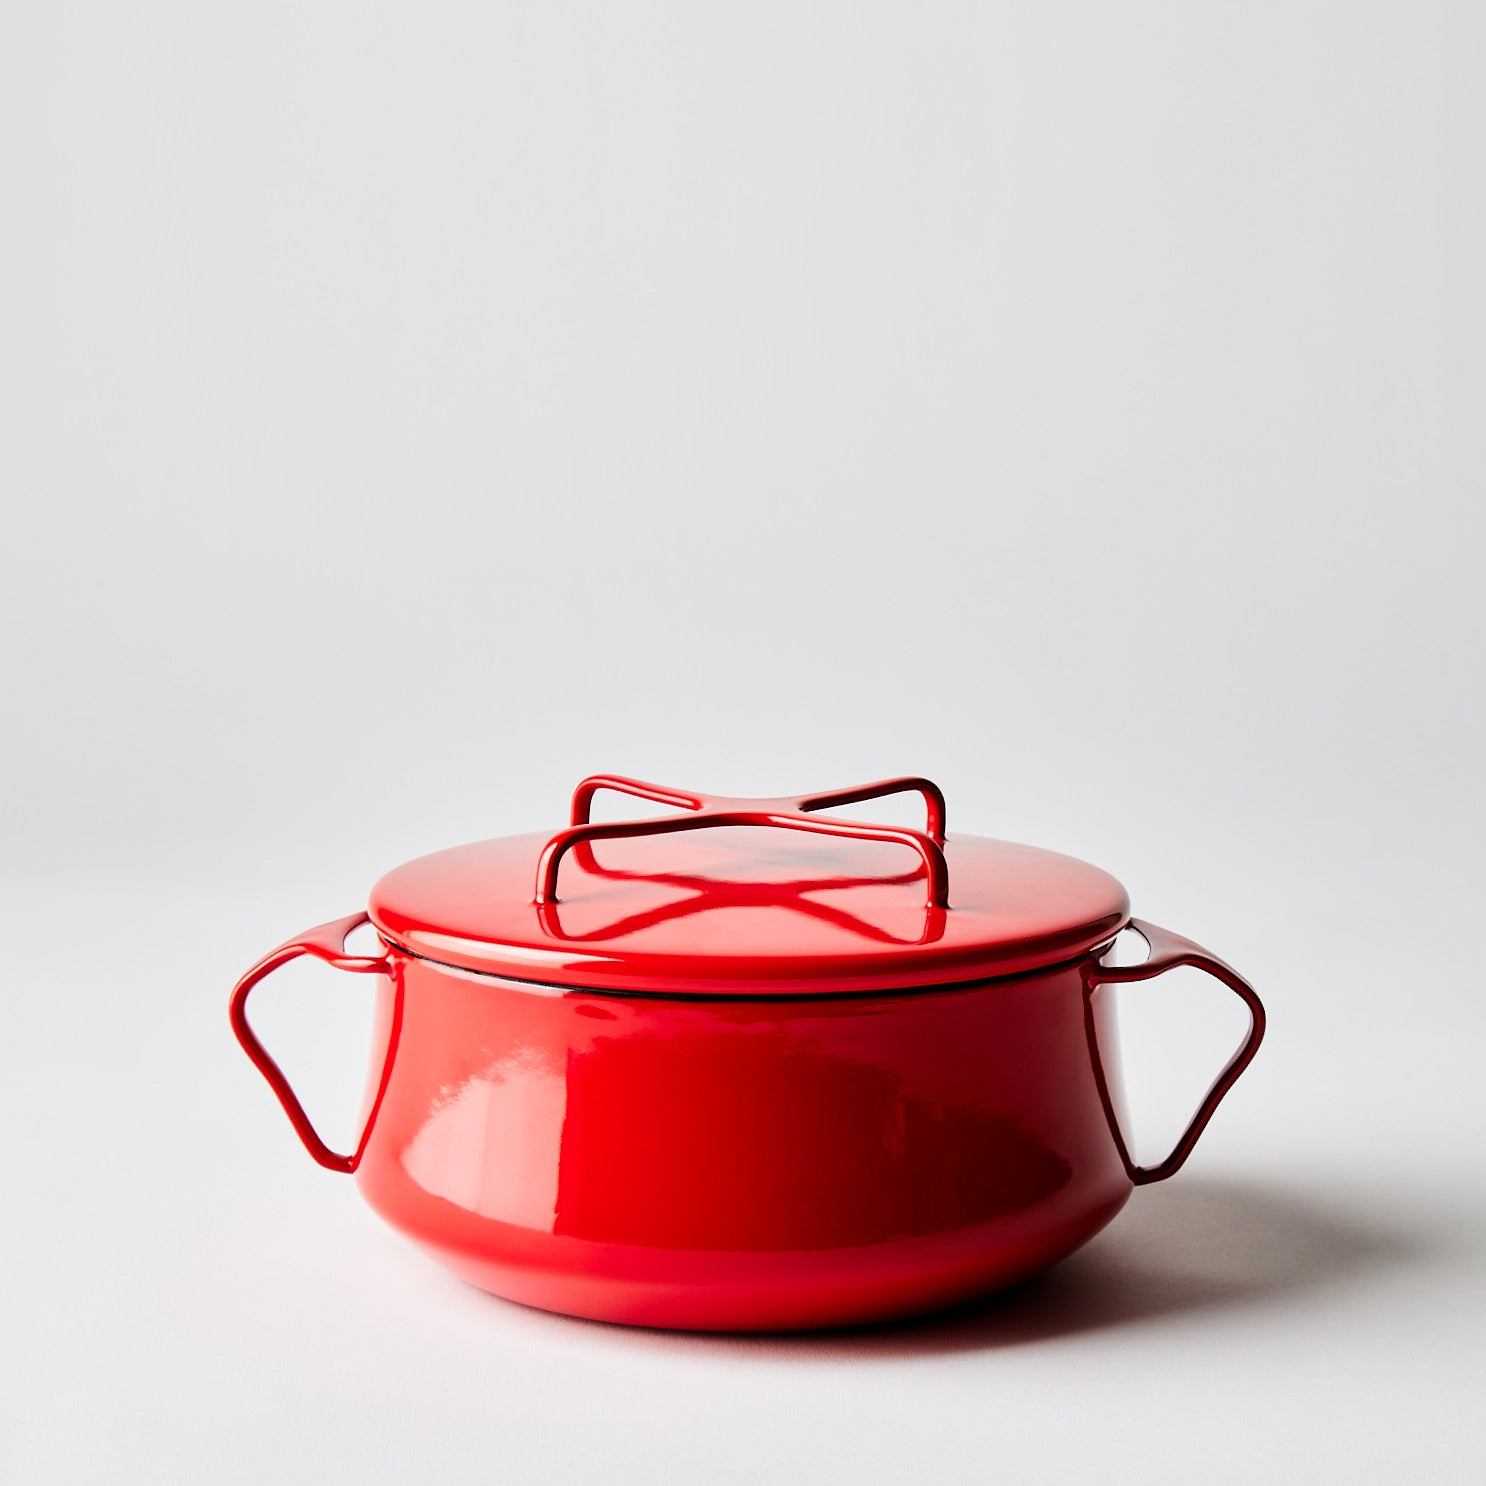 Sold at Auction: Vintage 1960s Dansk Kobenstyle Red Chili Quart Pot